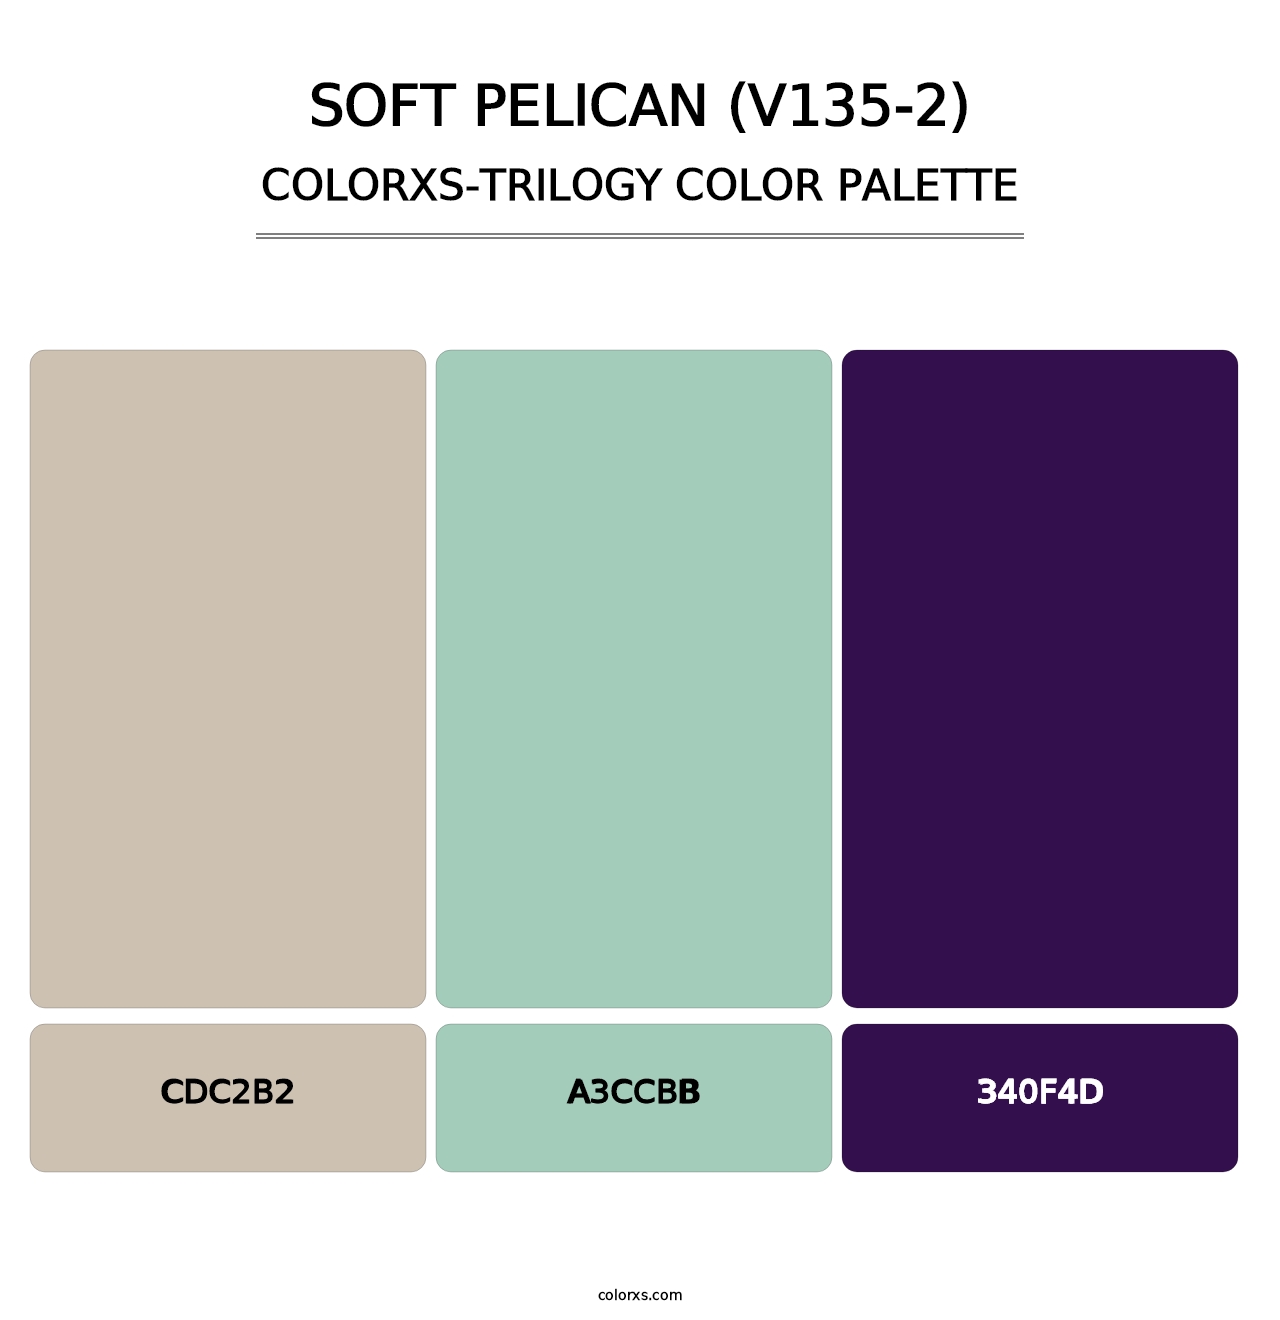 Soft Pelican (V135-2) - Colorxs Trilogy Palette